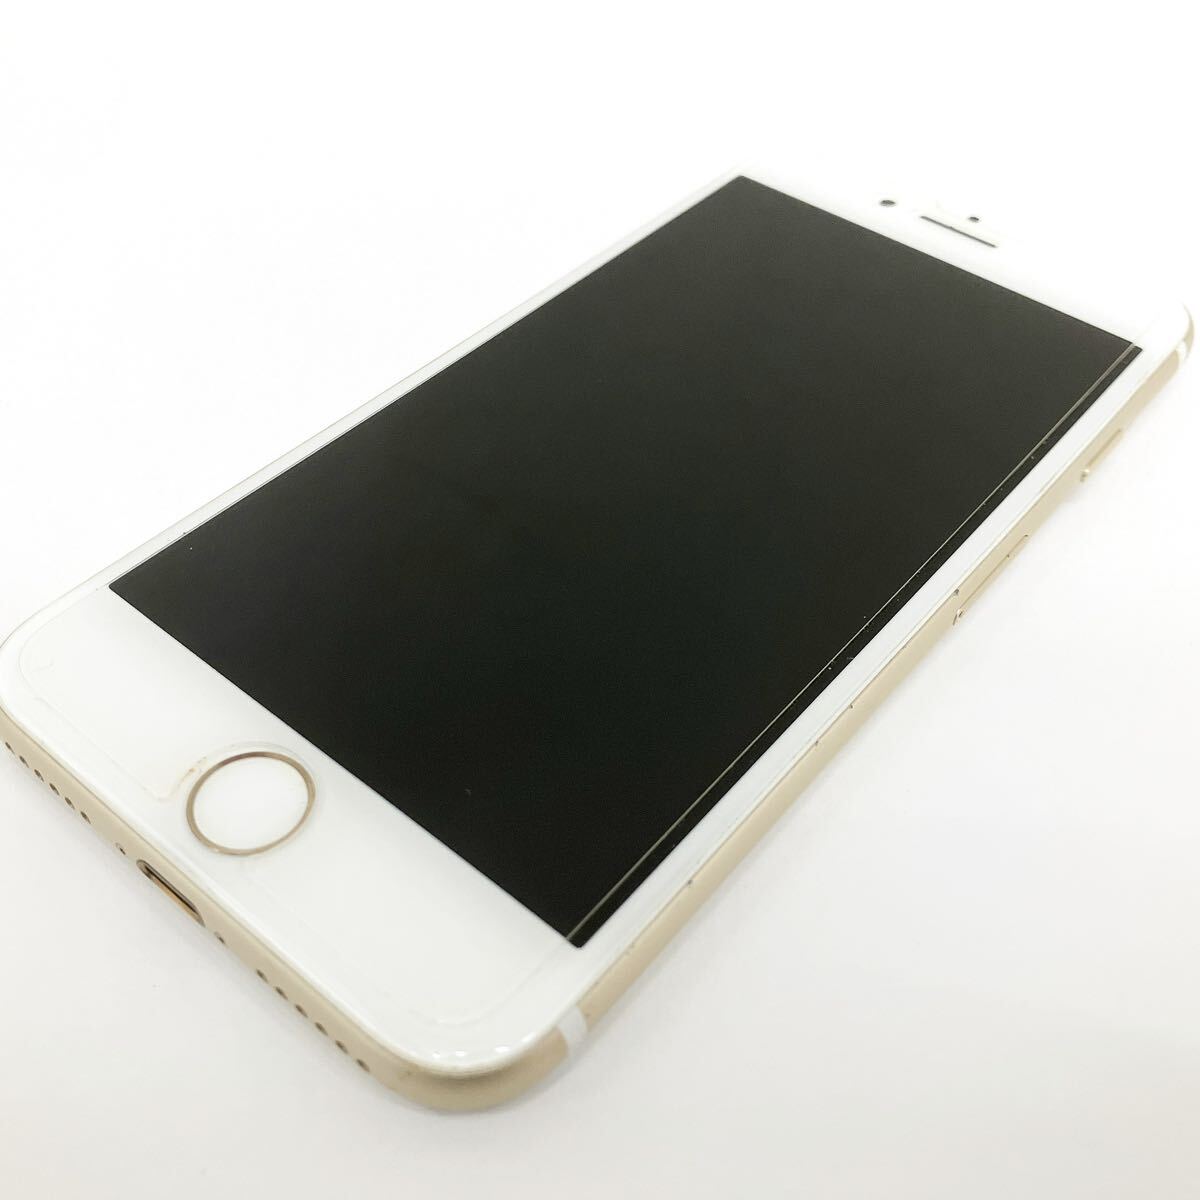 Apple アップル iPhone7 A1779 スマートフォン 携帯 初期化済み alpひ0312の画像2